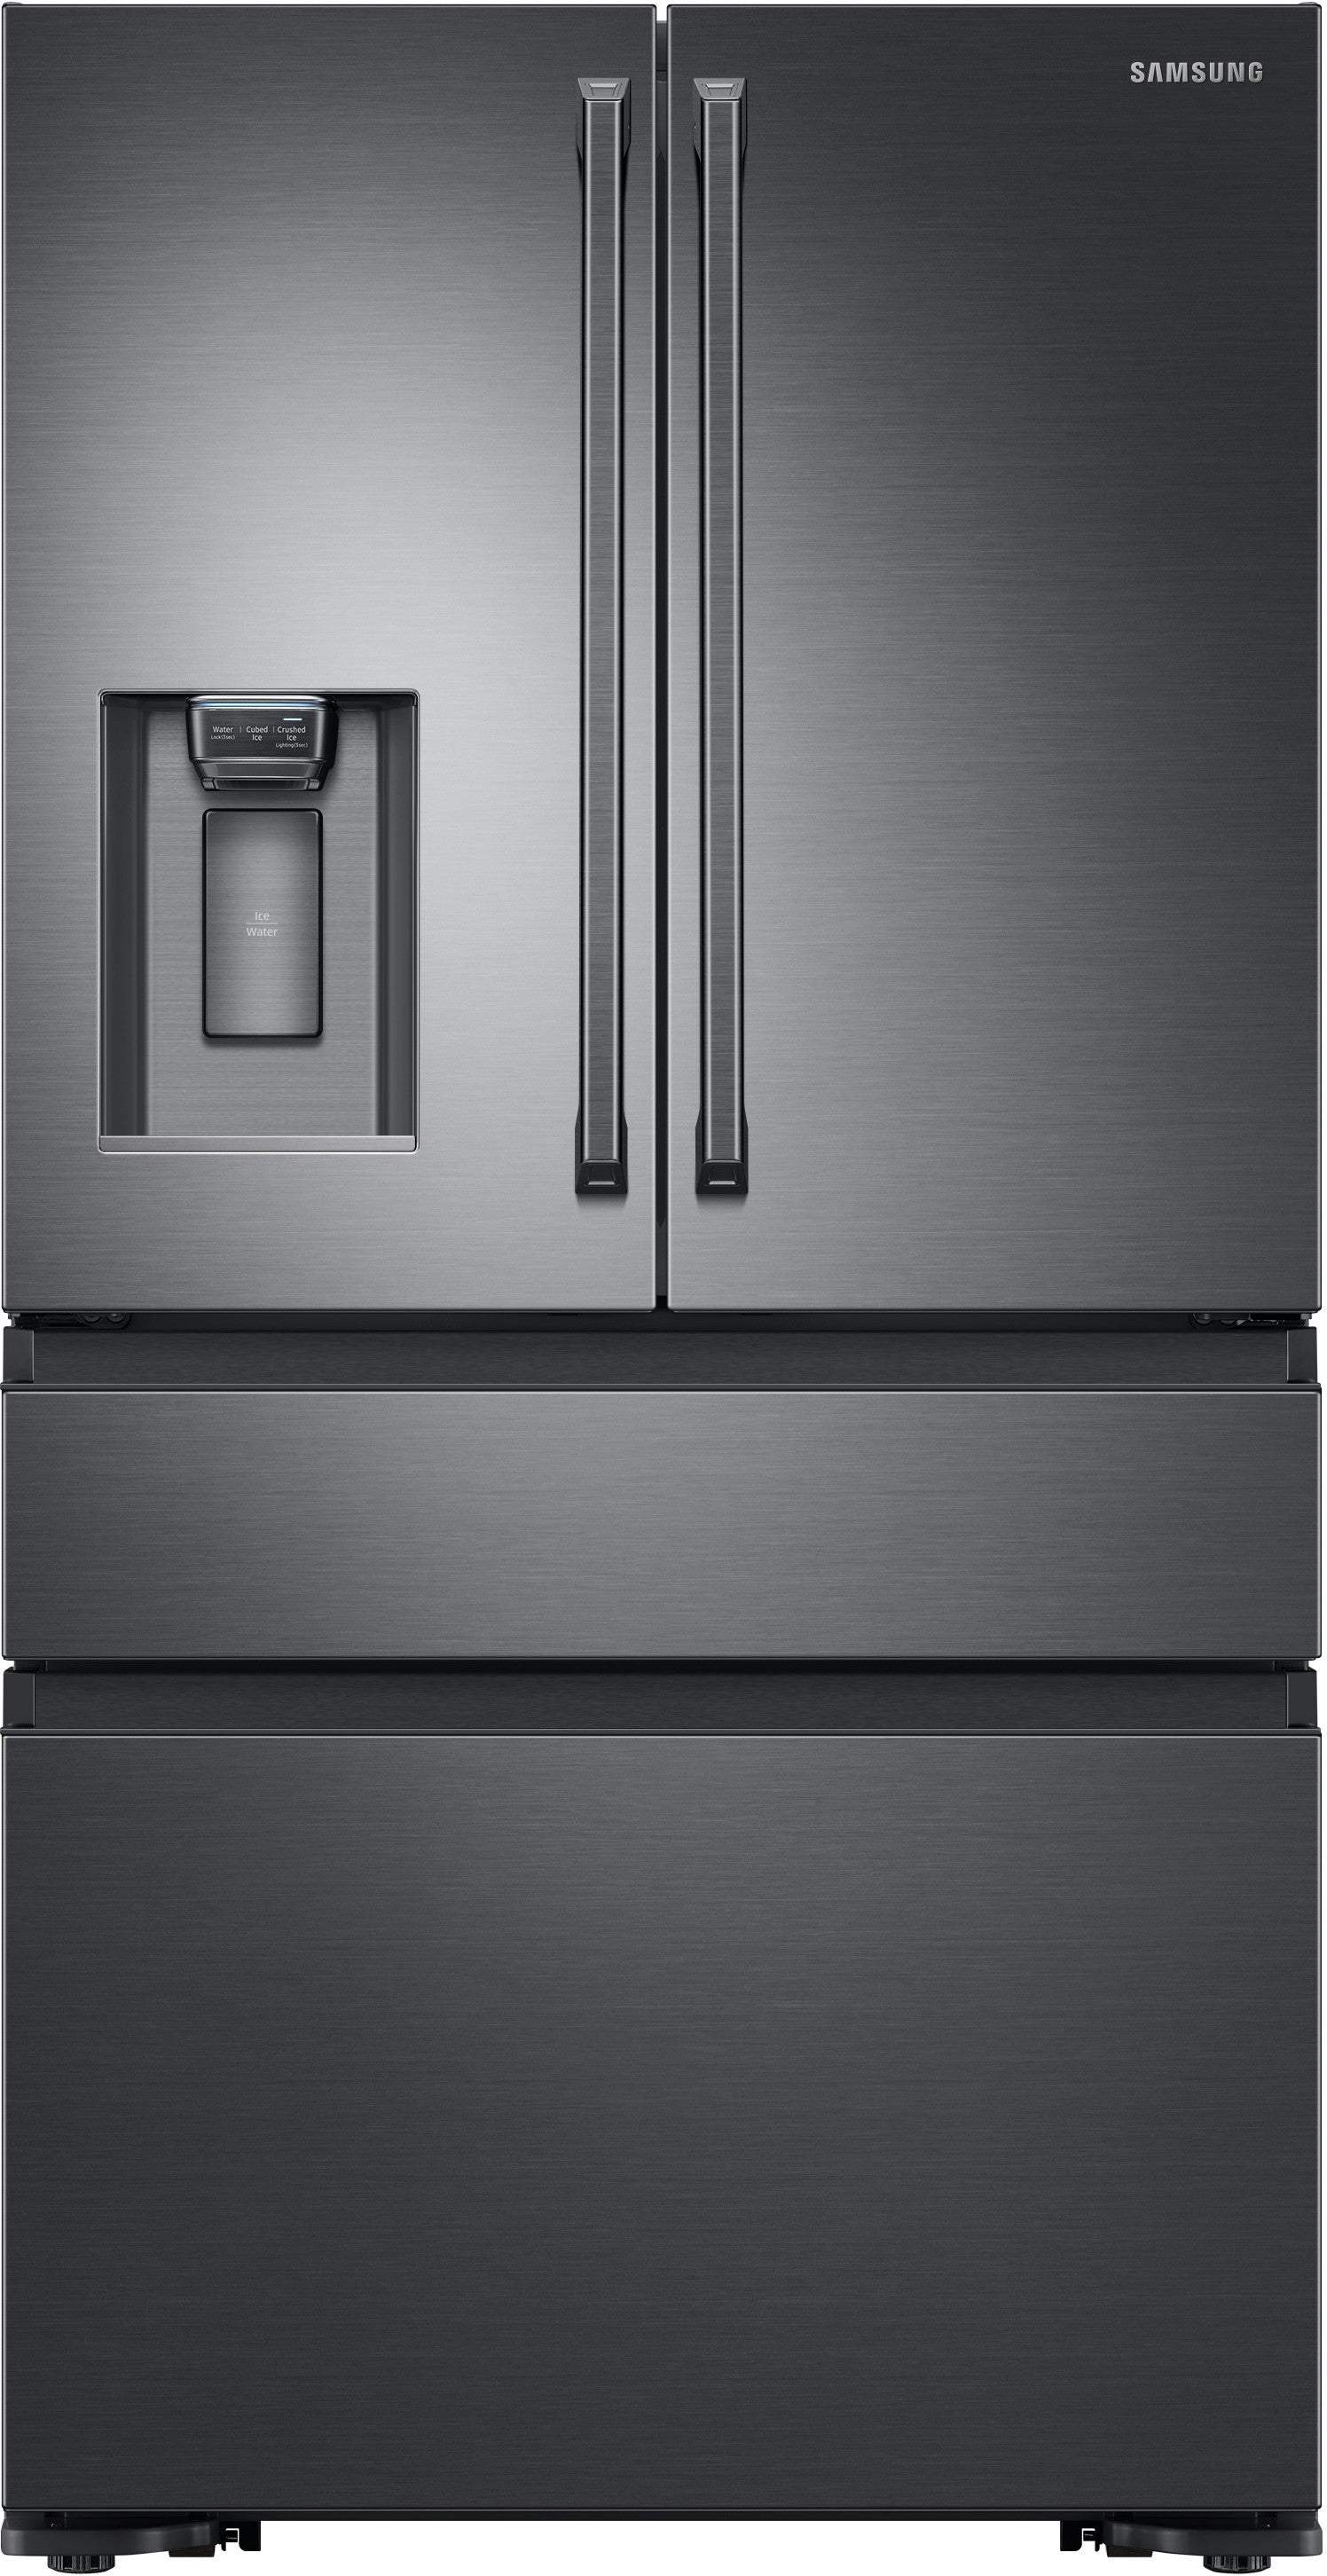 Samsung RF23M8090SG/AA 22.7 Cu. Ft. 4-Door Flex French Door Refrigerator